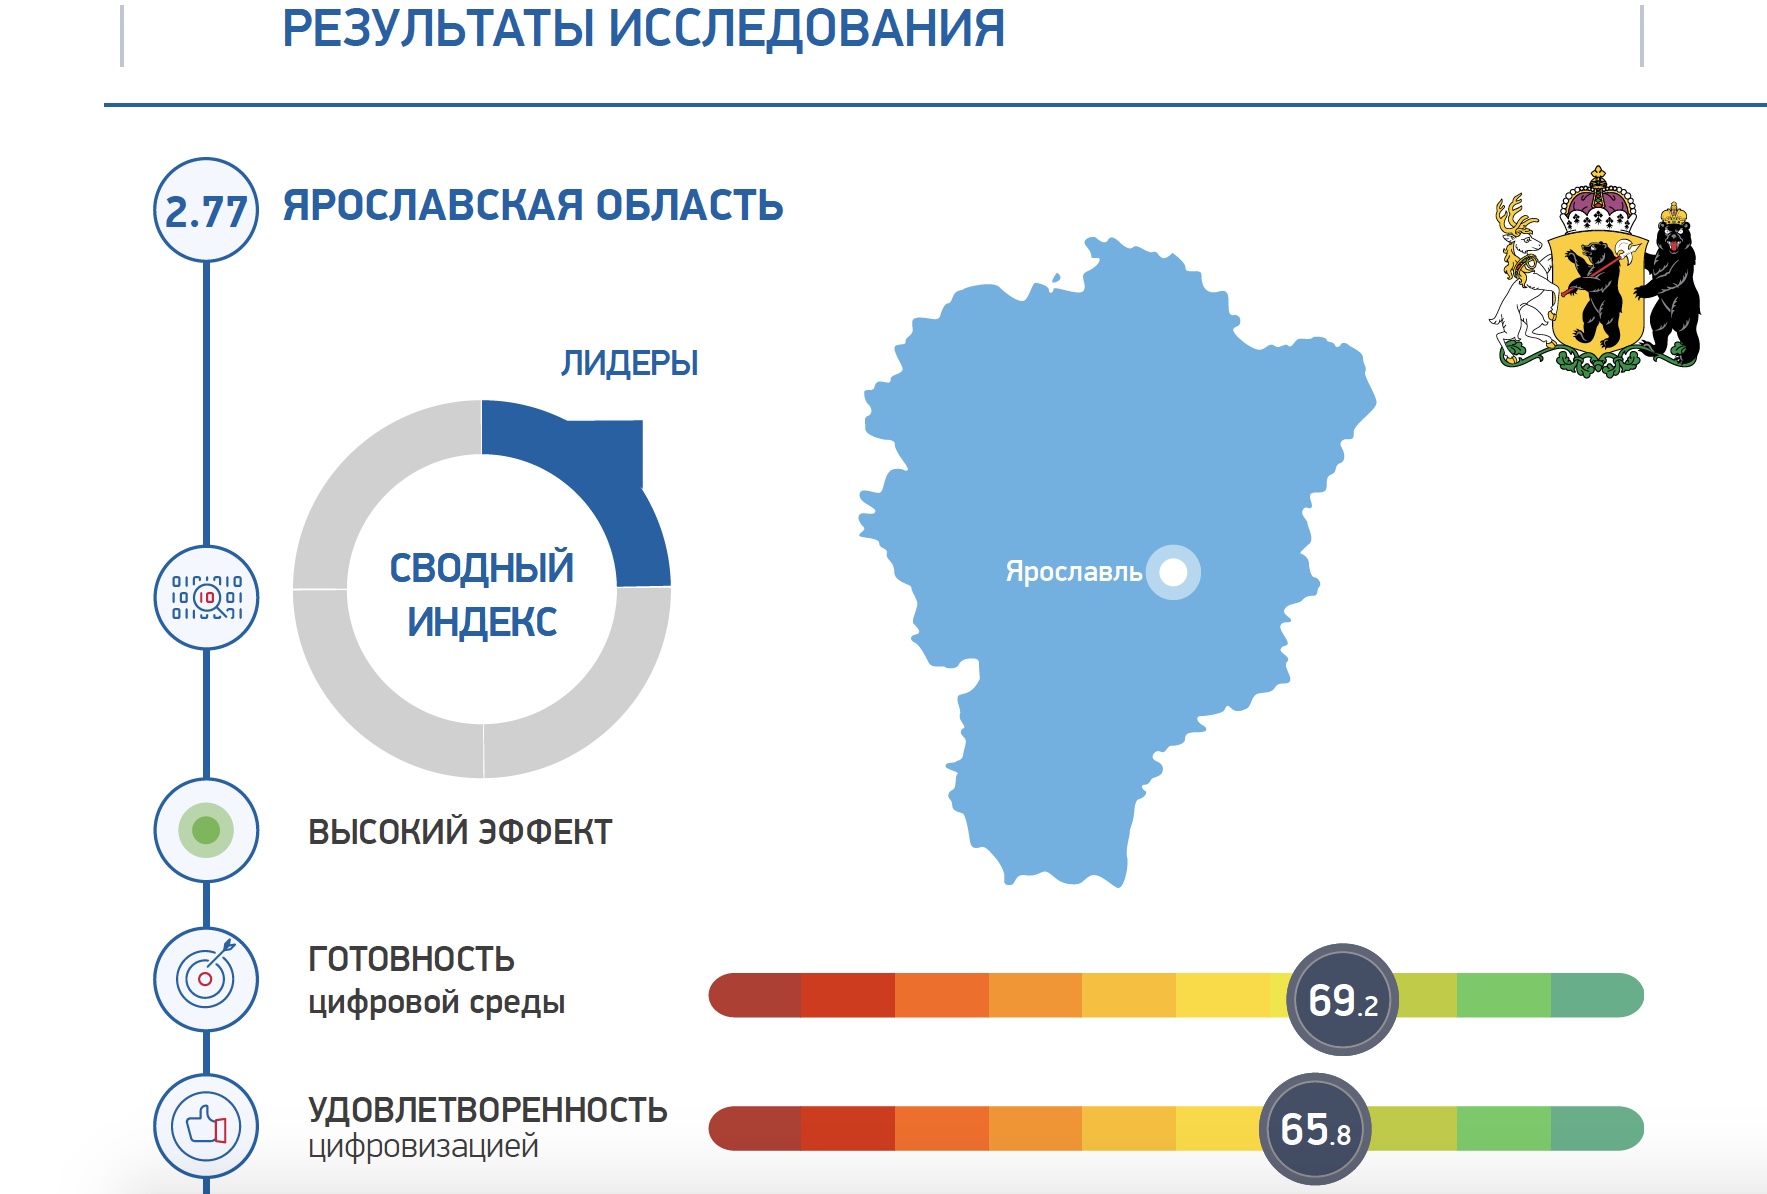 Ярославская область – в числе лидеров рейтинга по цифровому развитию регионов